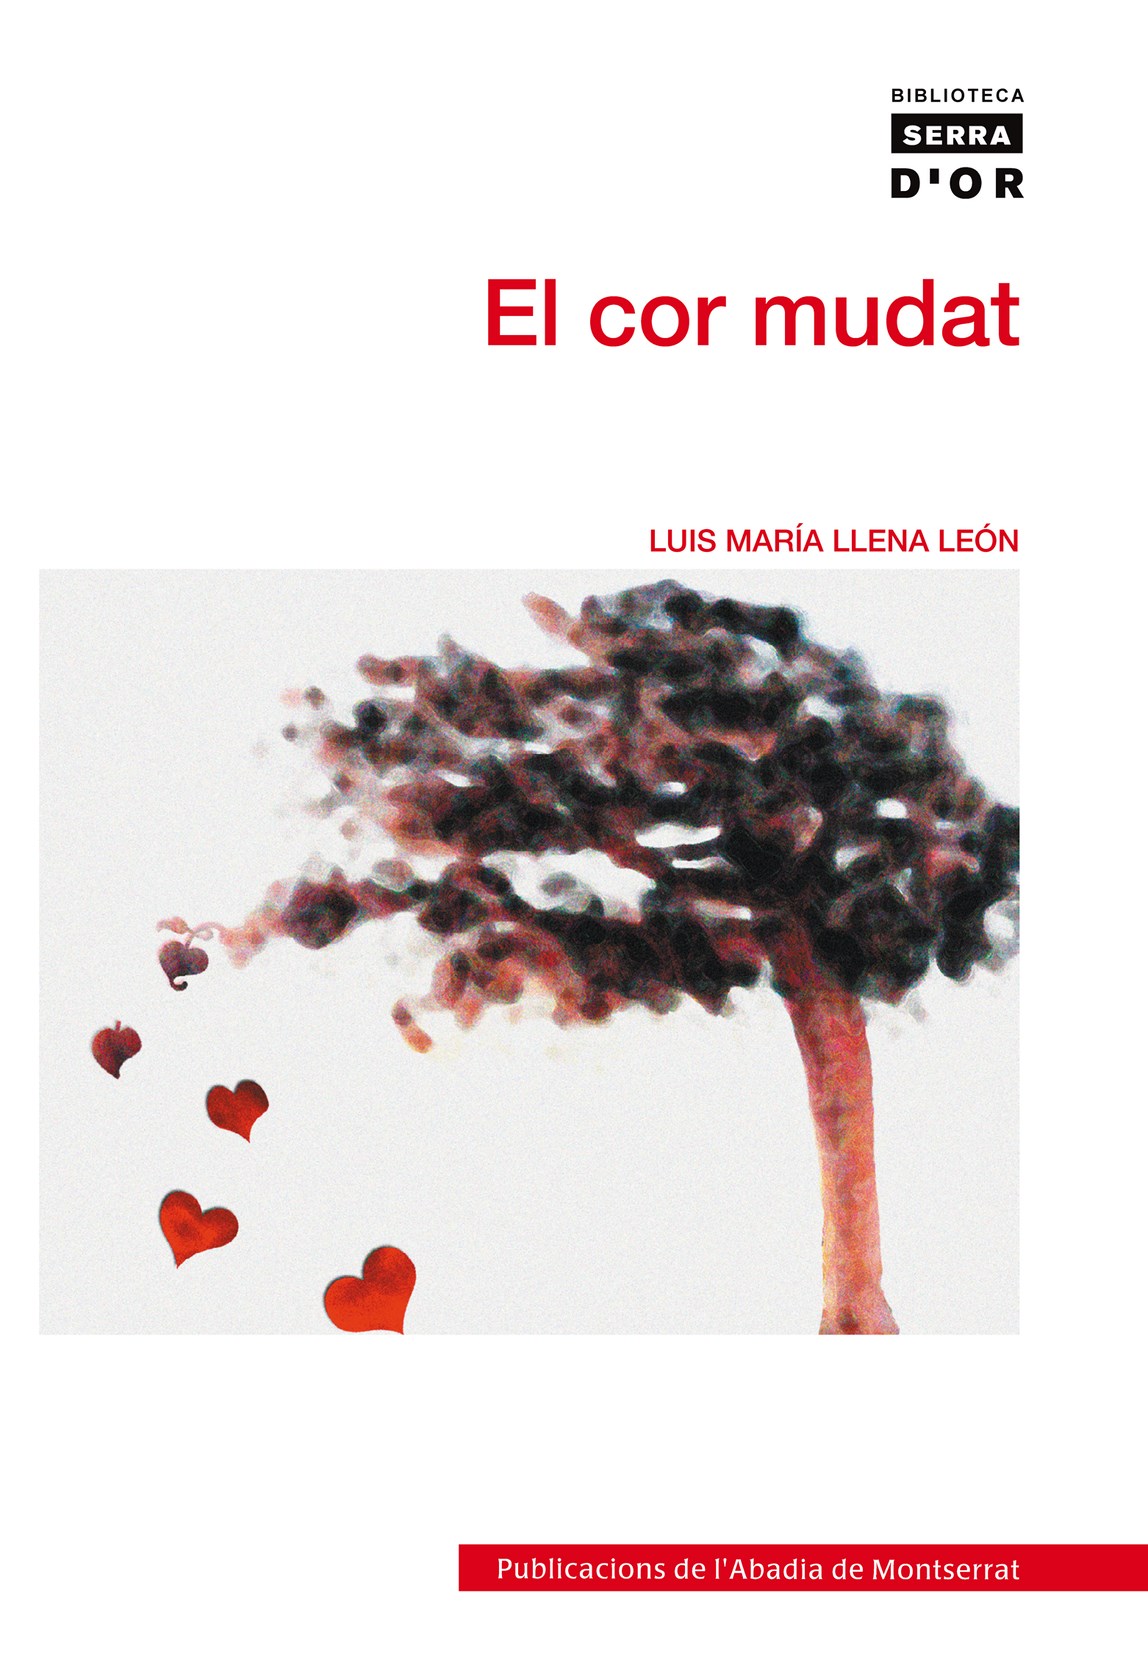 Luis Maria Llena León